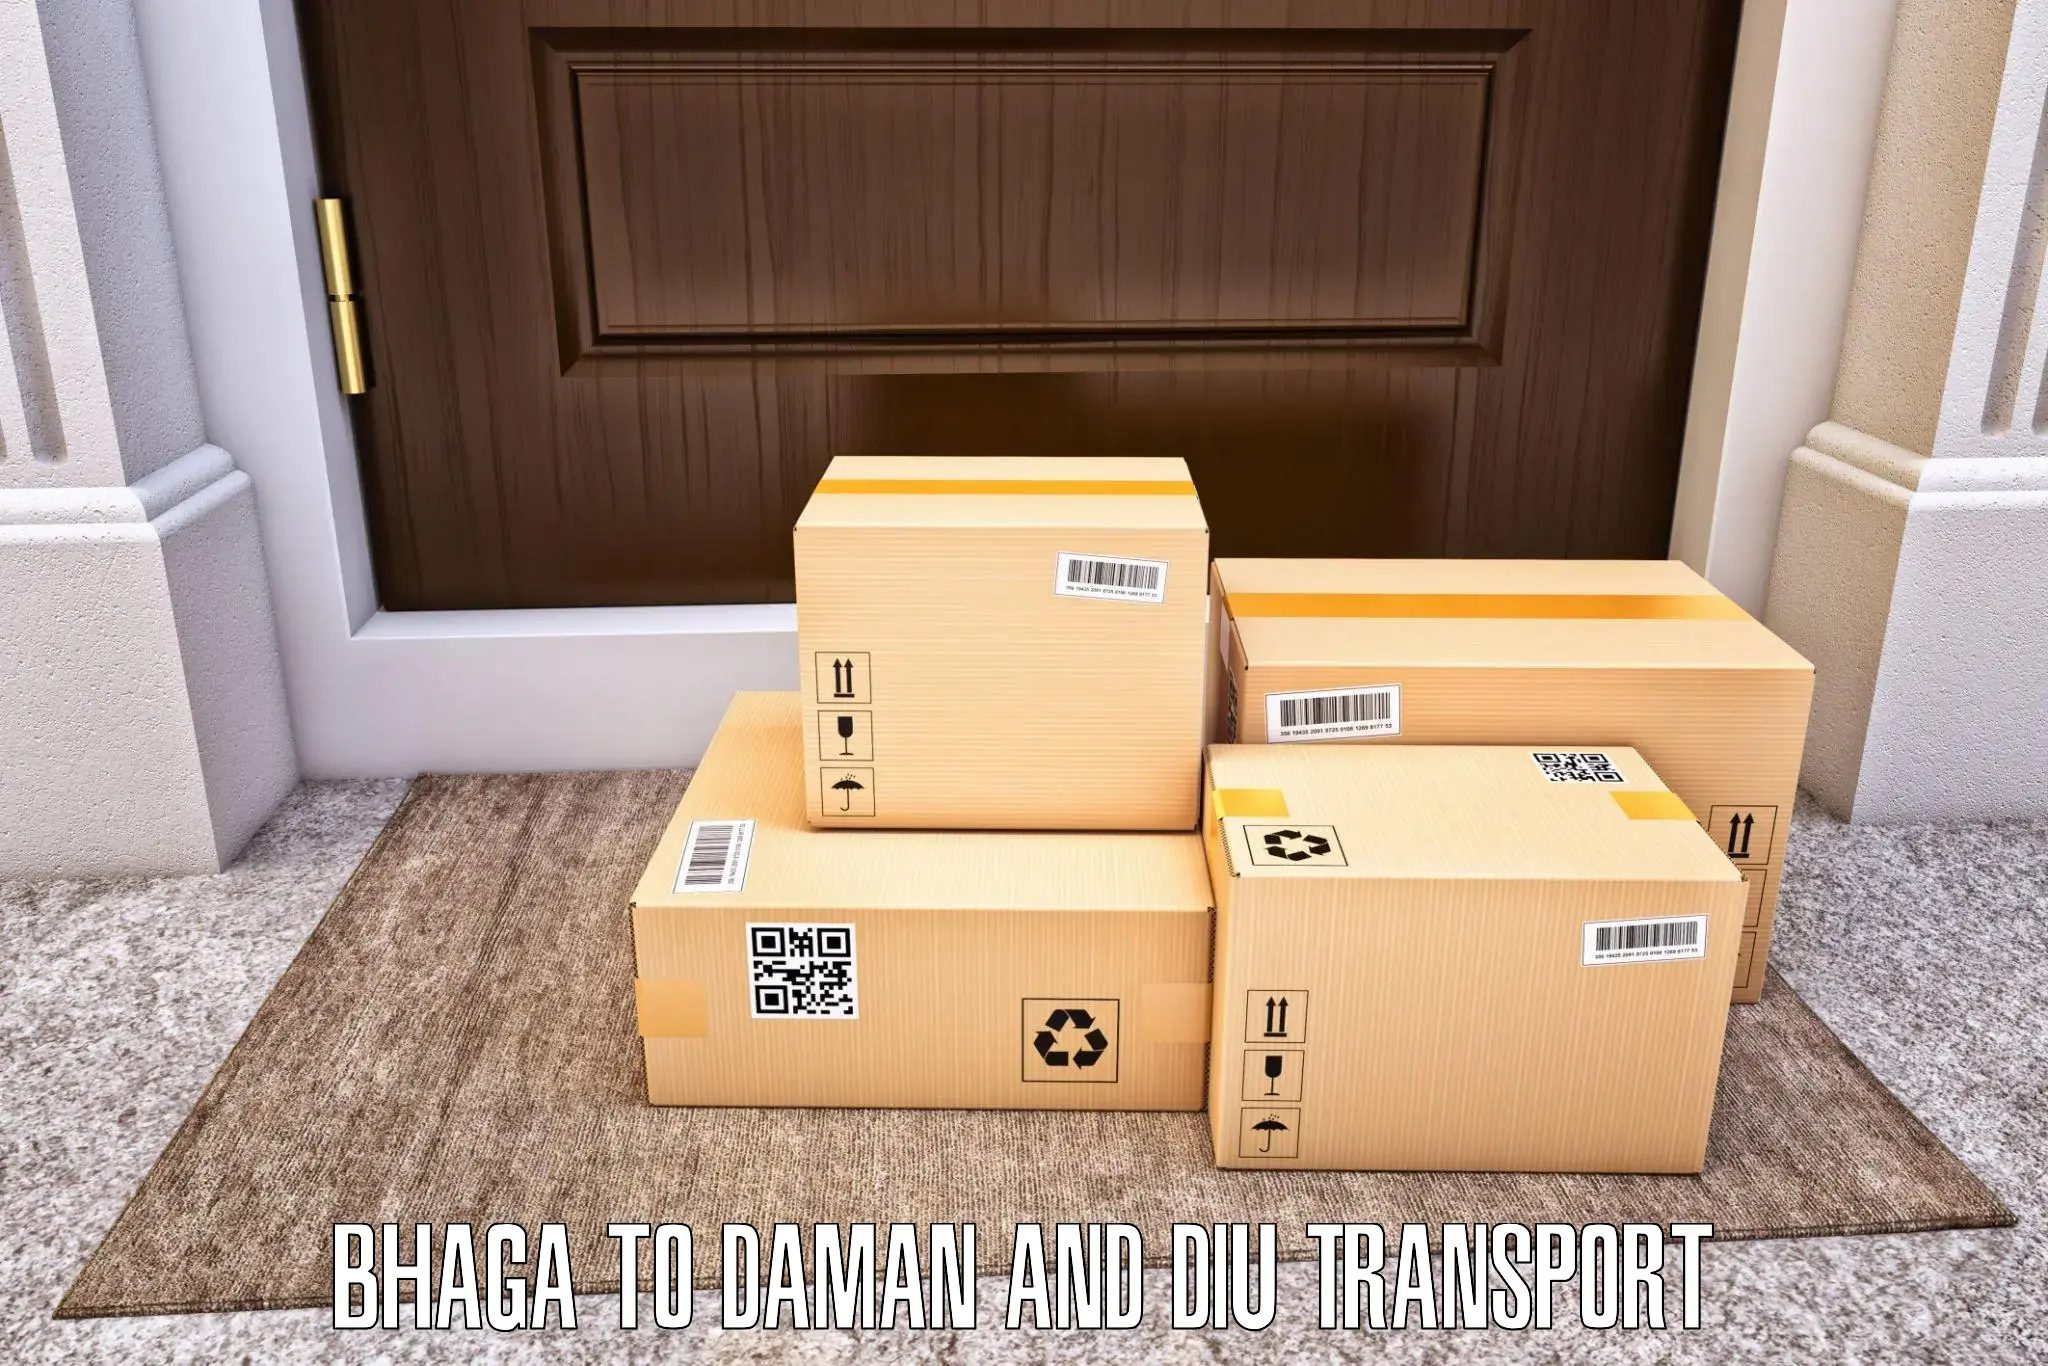 Online transport service Bhaga to Daman